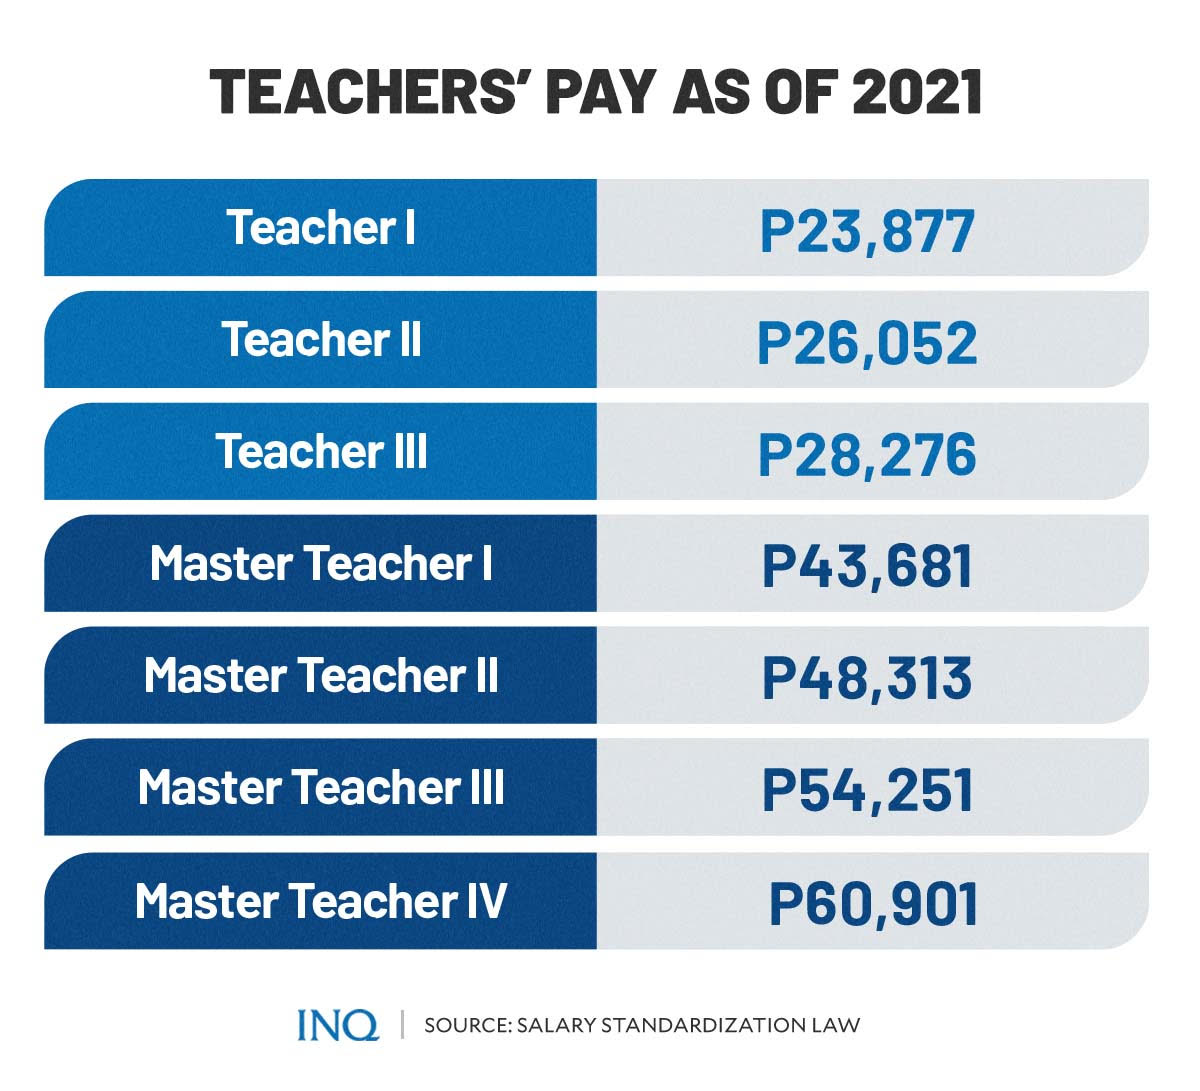 Teachers' pay as of 2021